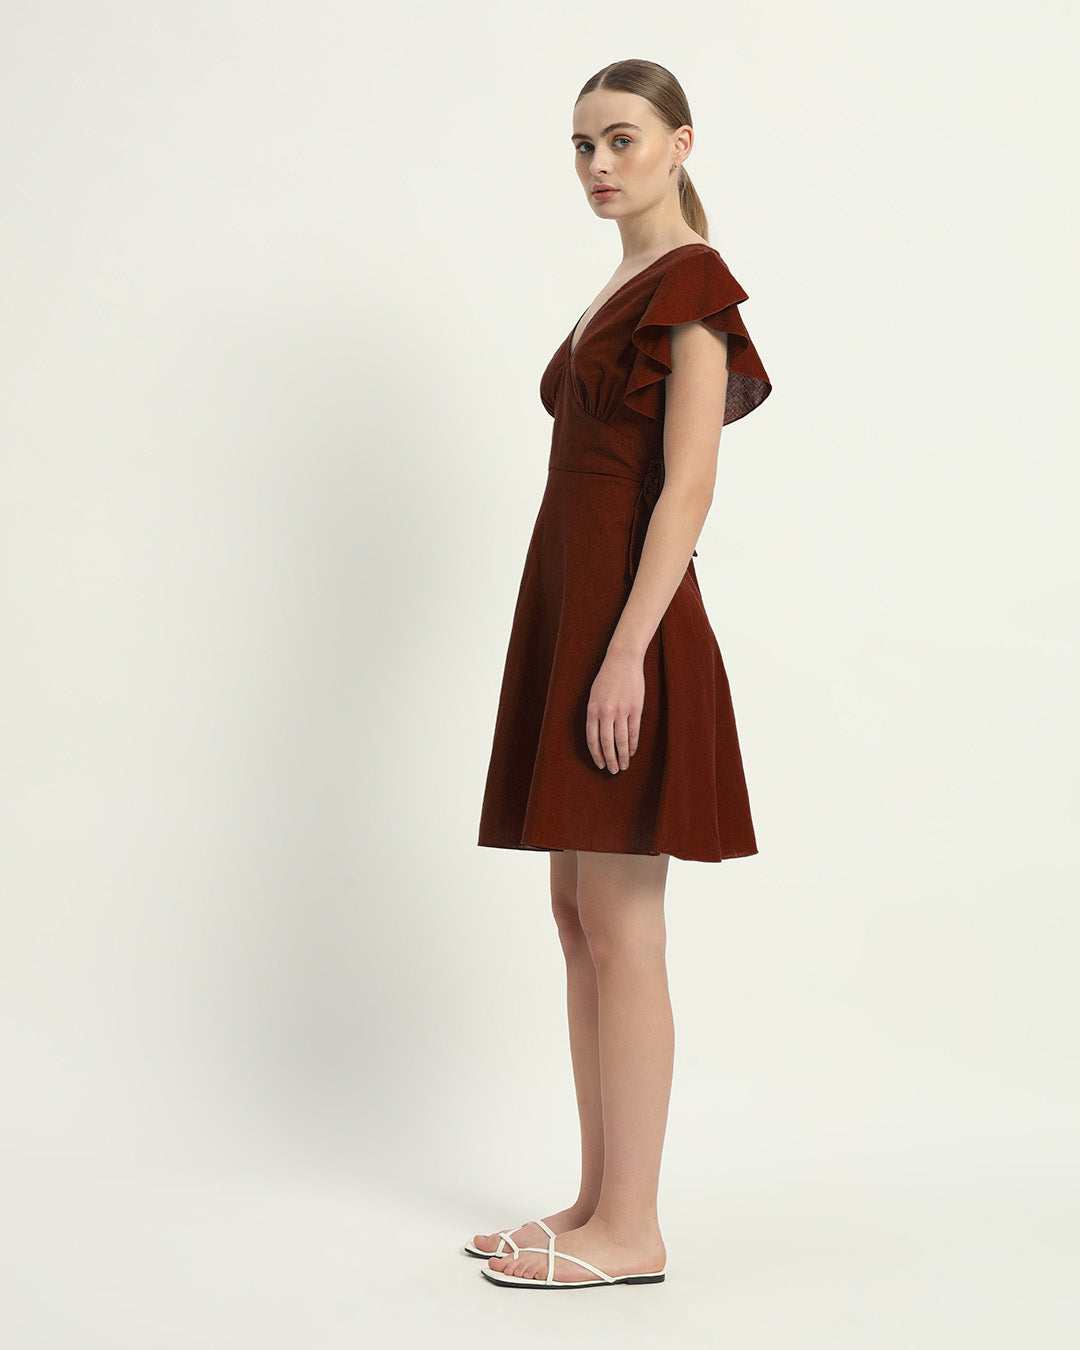 The Rouge Fairlie Cotton Dress